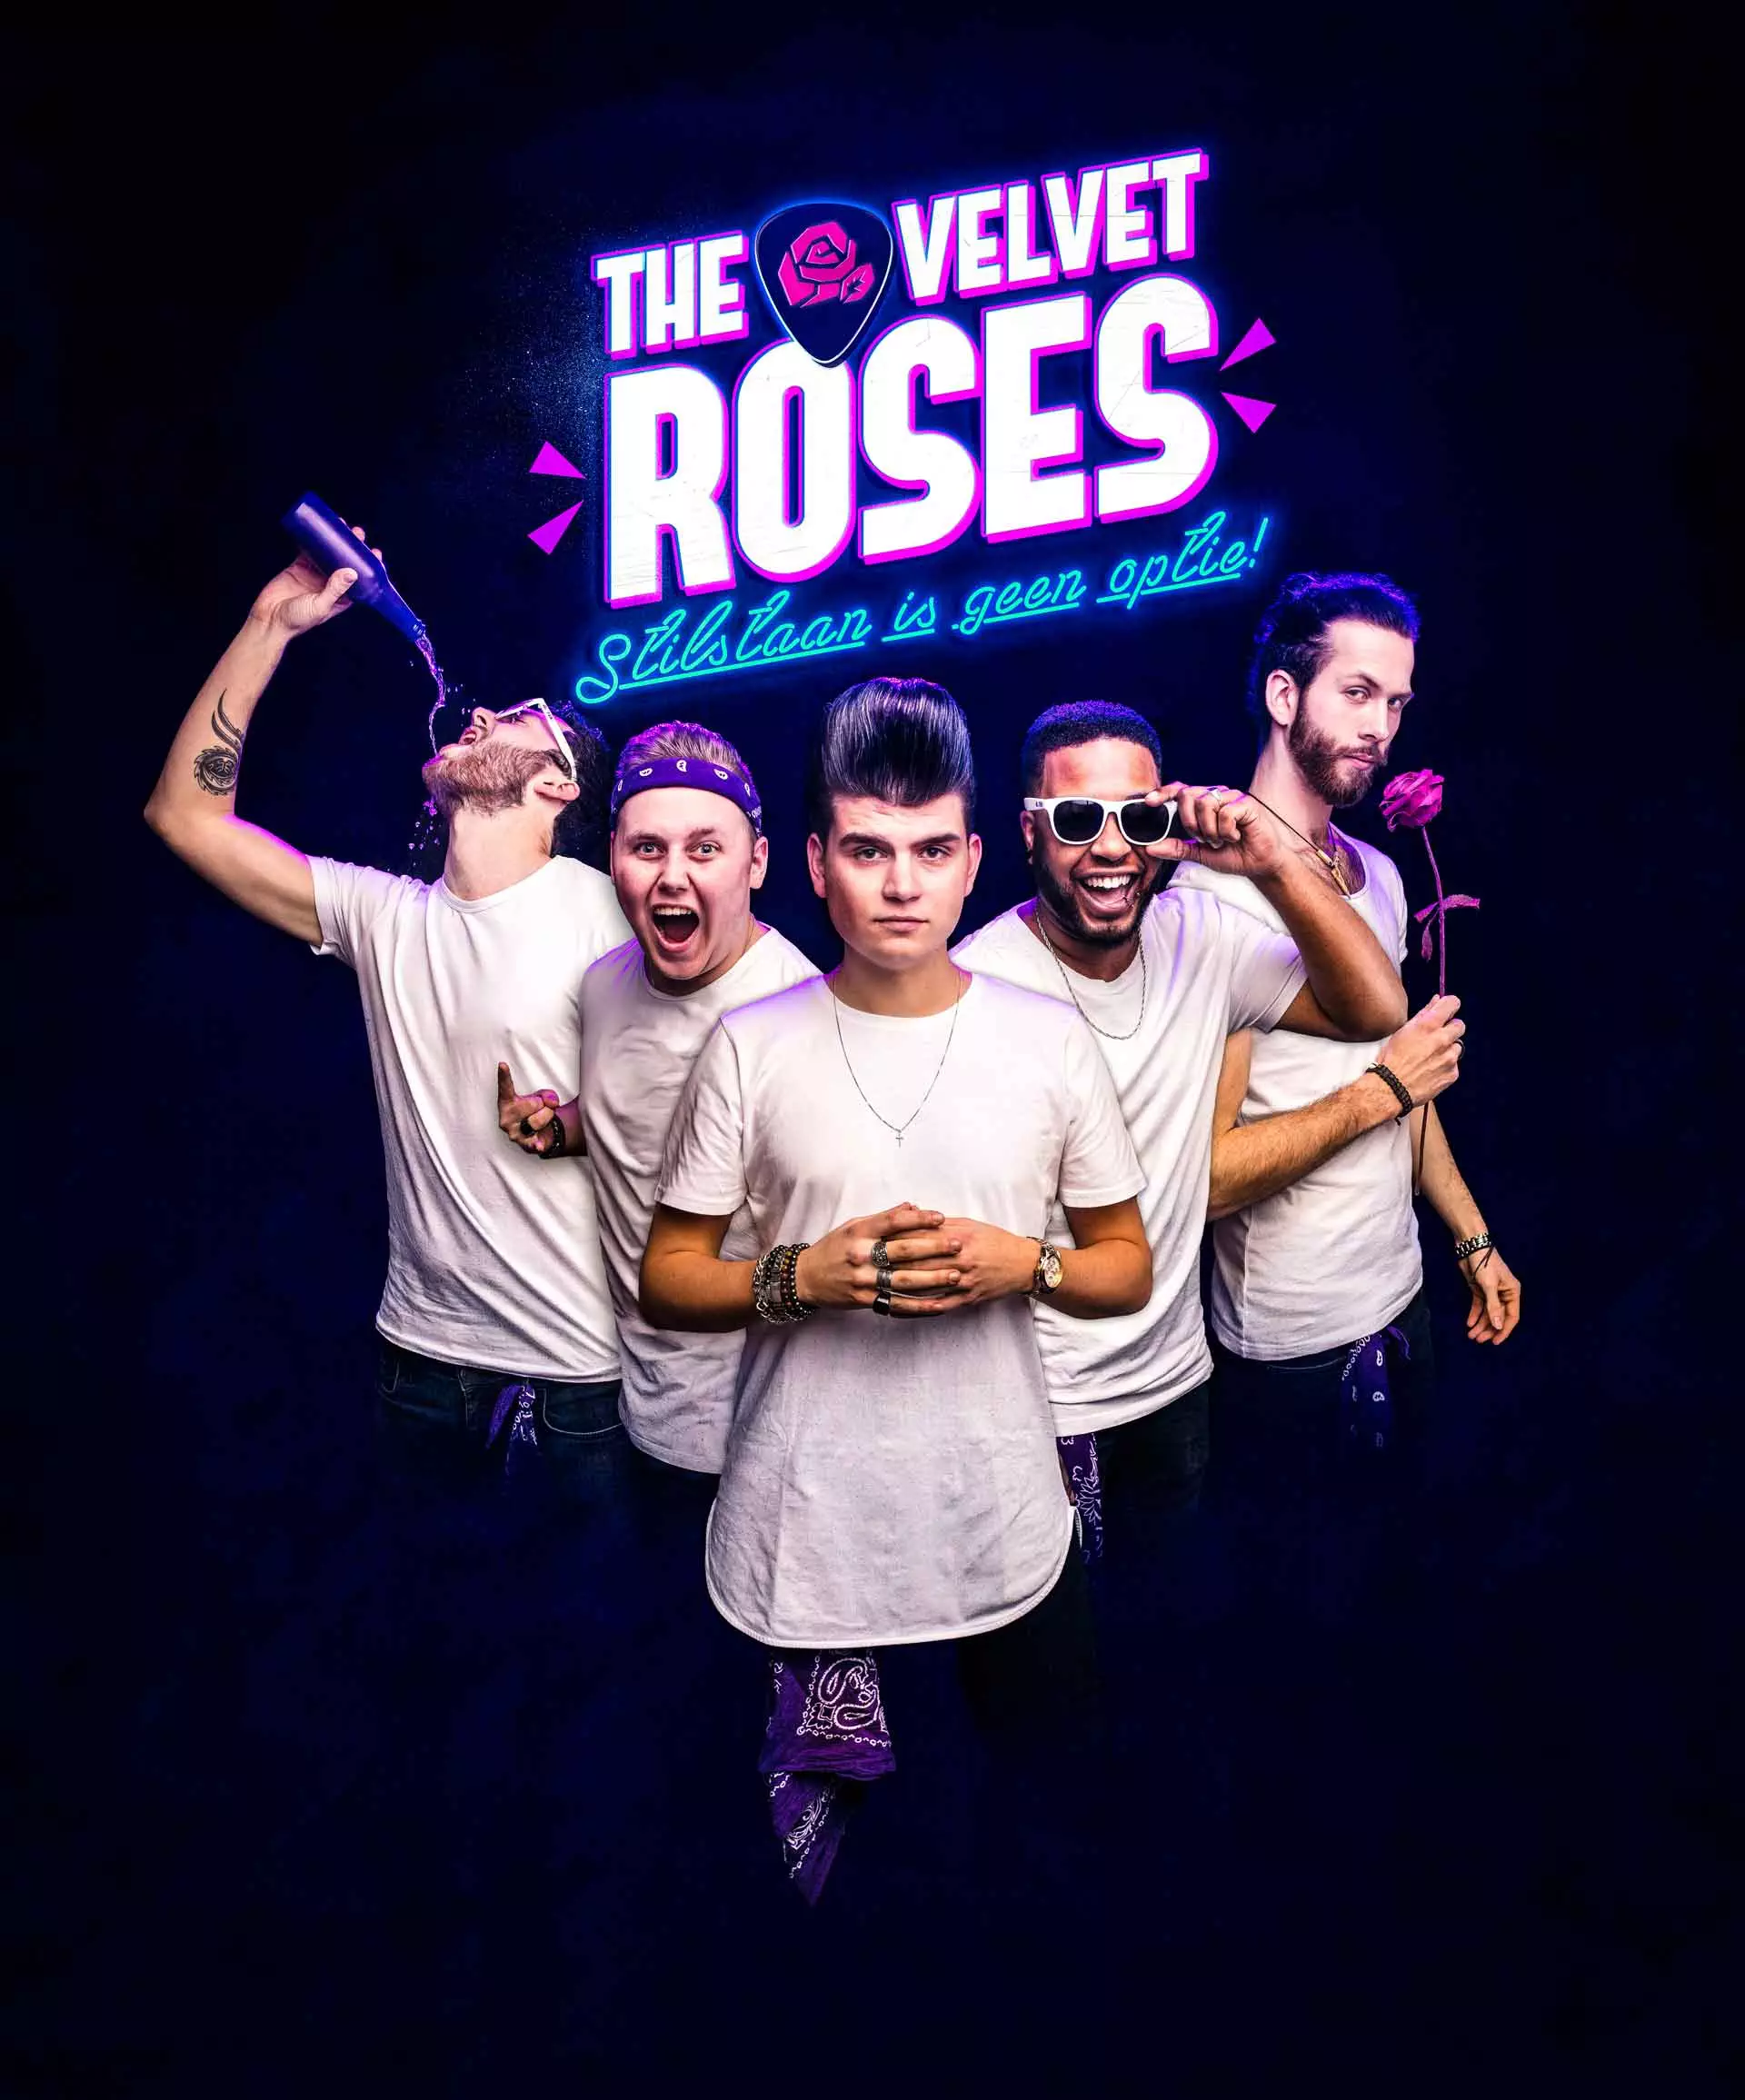 Coverband The Velvet Roses